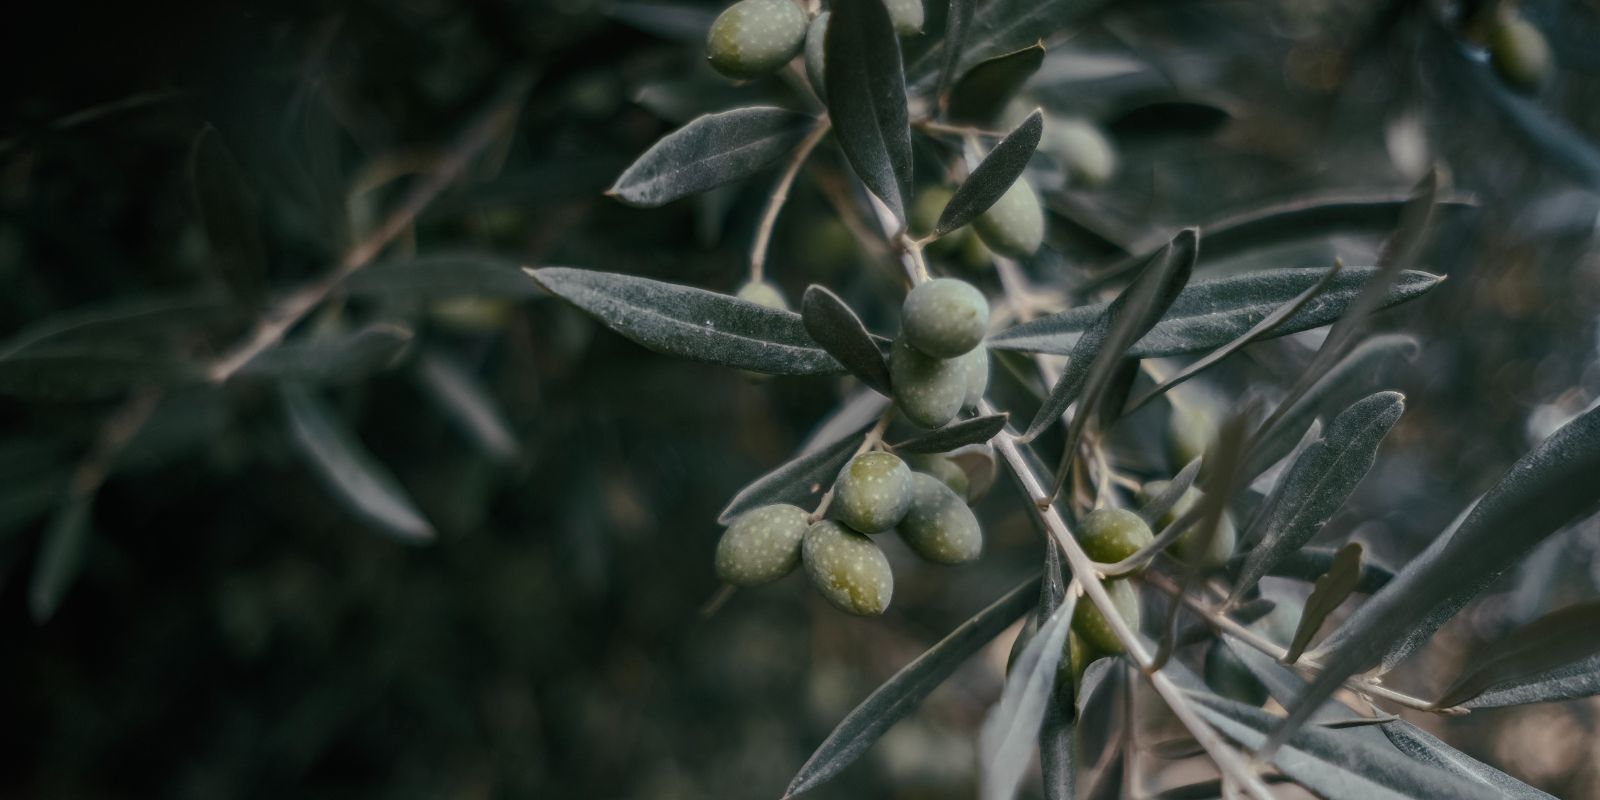 Olíva olaj